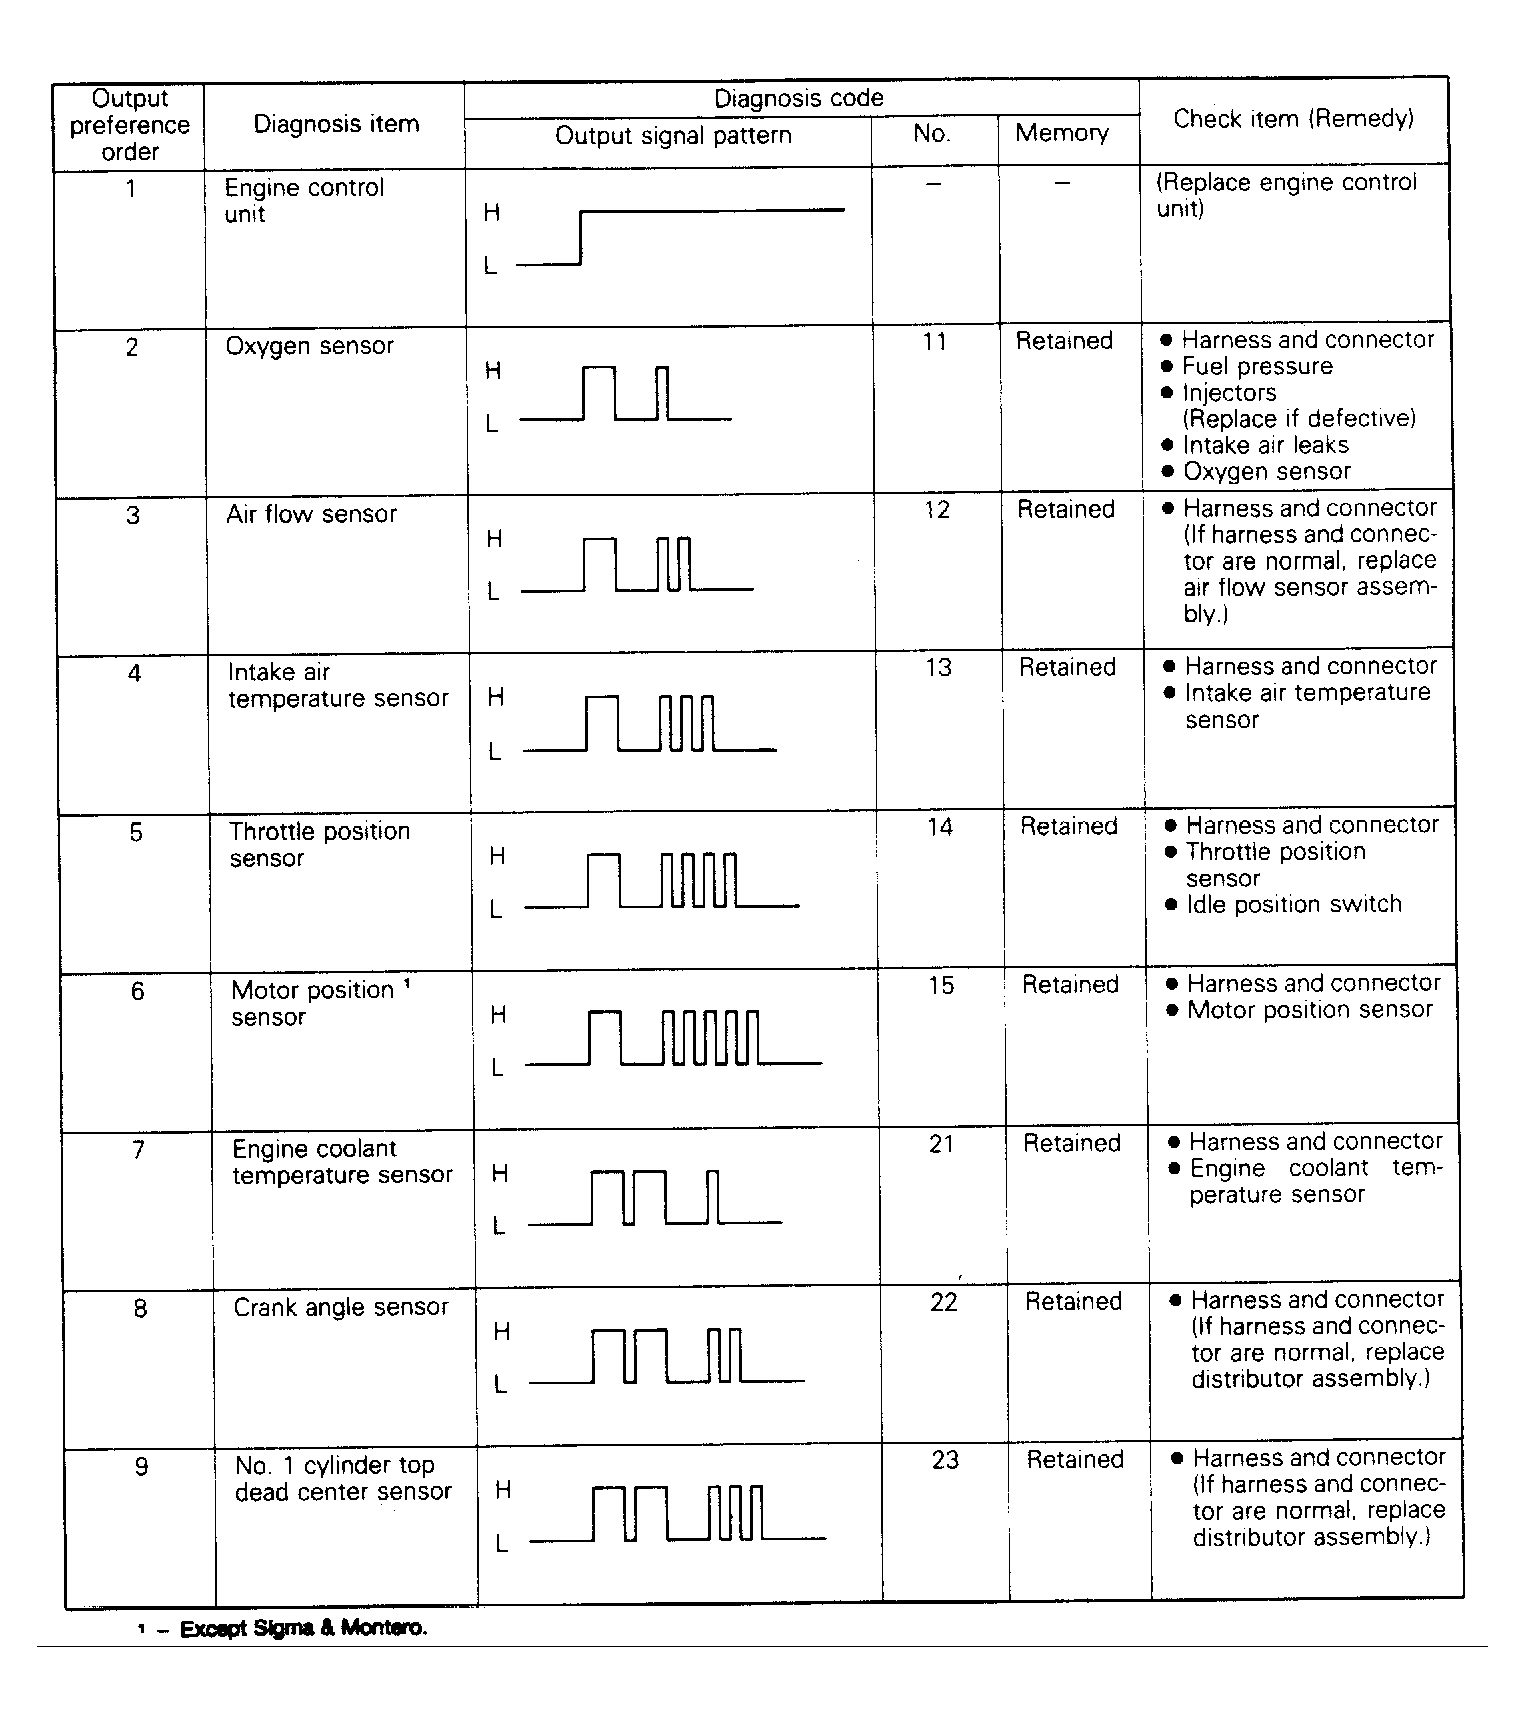 Dodge Colt GL 1991 - Component Locations -  Diagnostic Fault Chart (1 of 2)